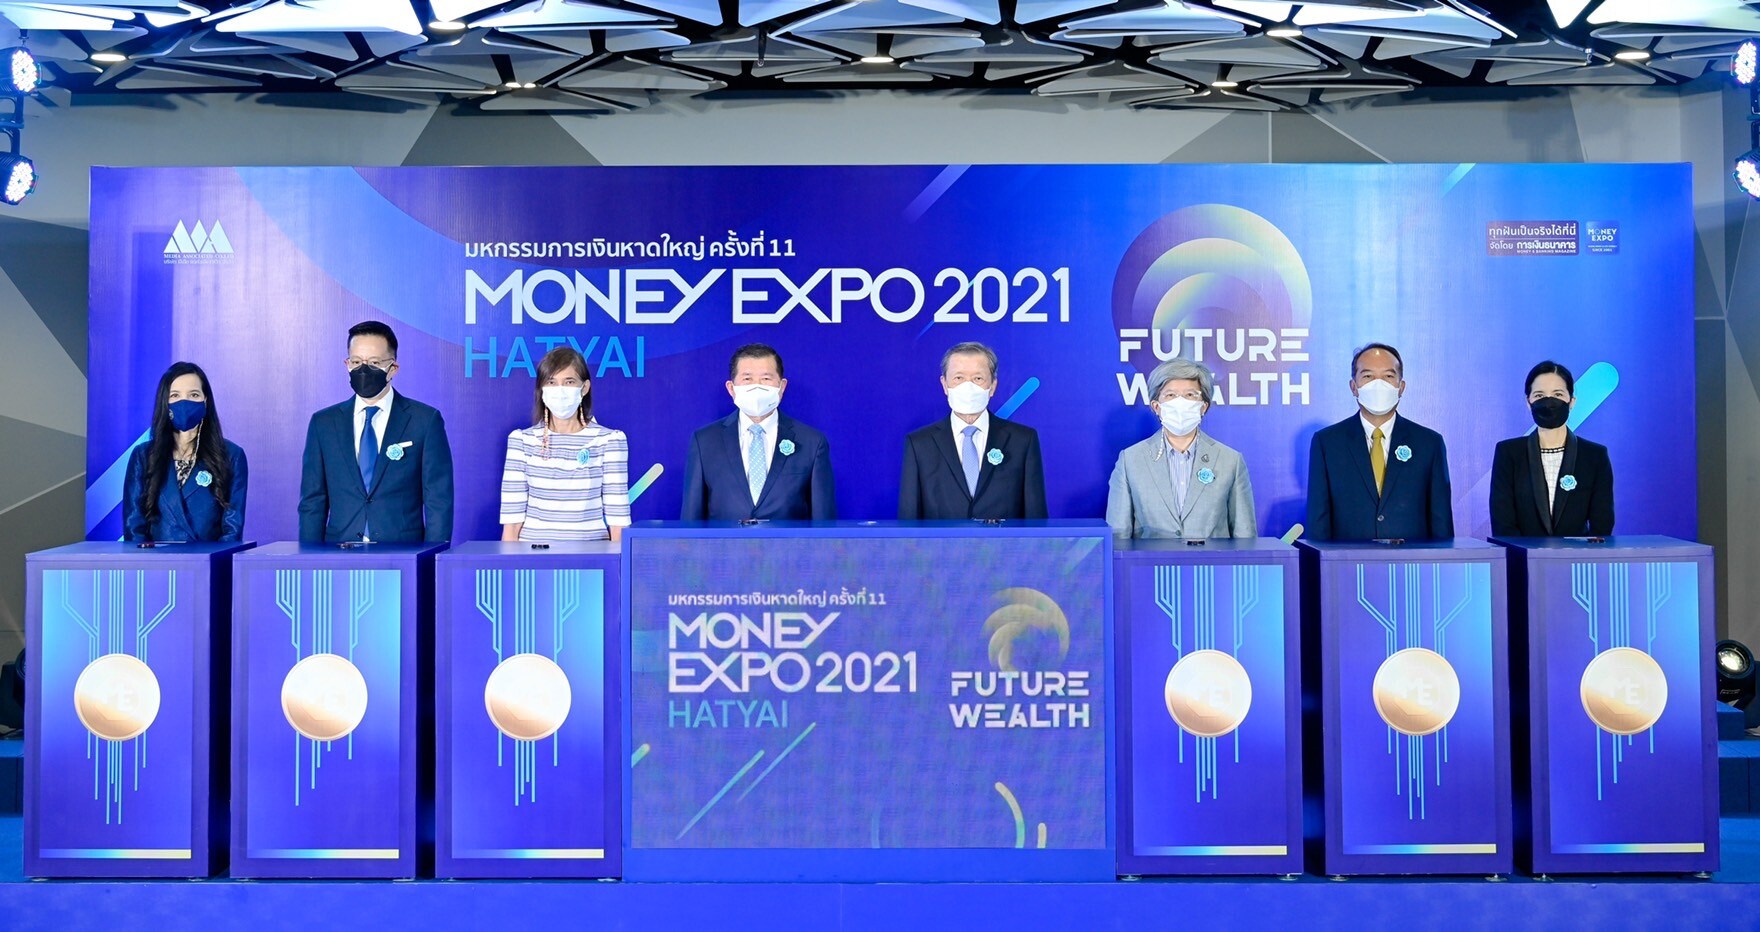 เปิดงาน Money Expo Hatyai 2021 สถาบันการเงินอัดโปรโมชั่นพิเศษส่งท้ายปี  ส่งตรงถึงพี่น้องชาวใต้